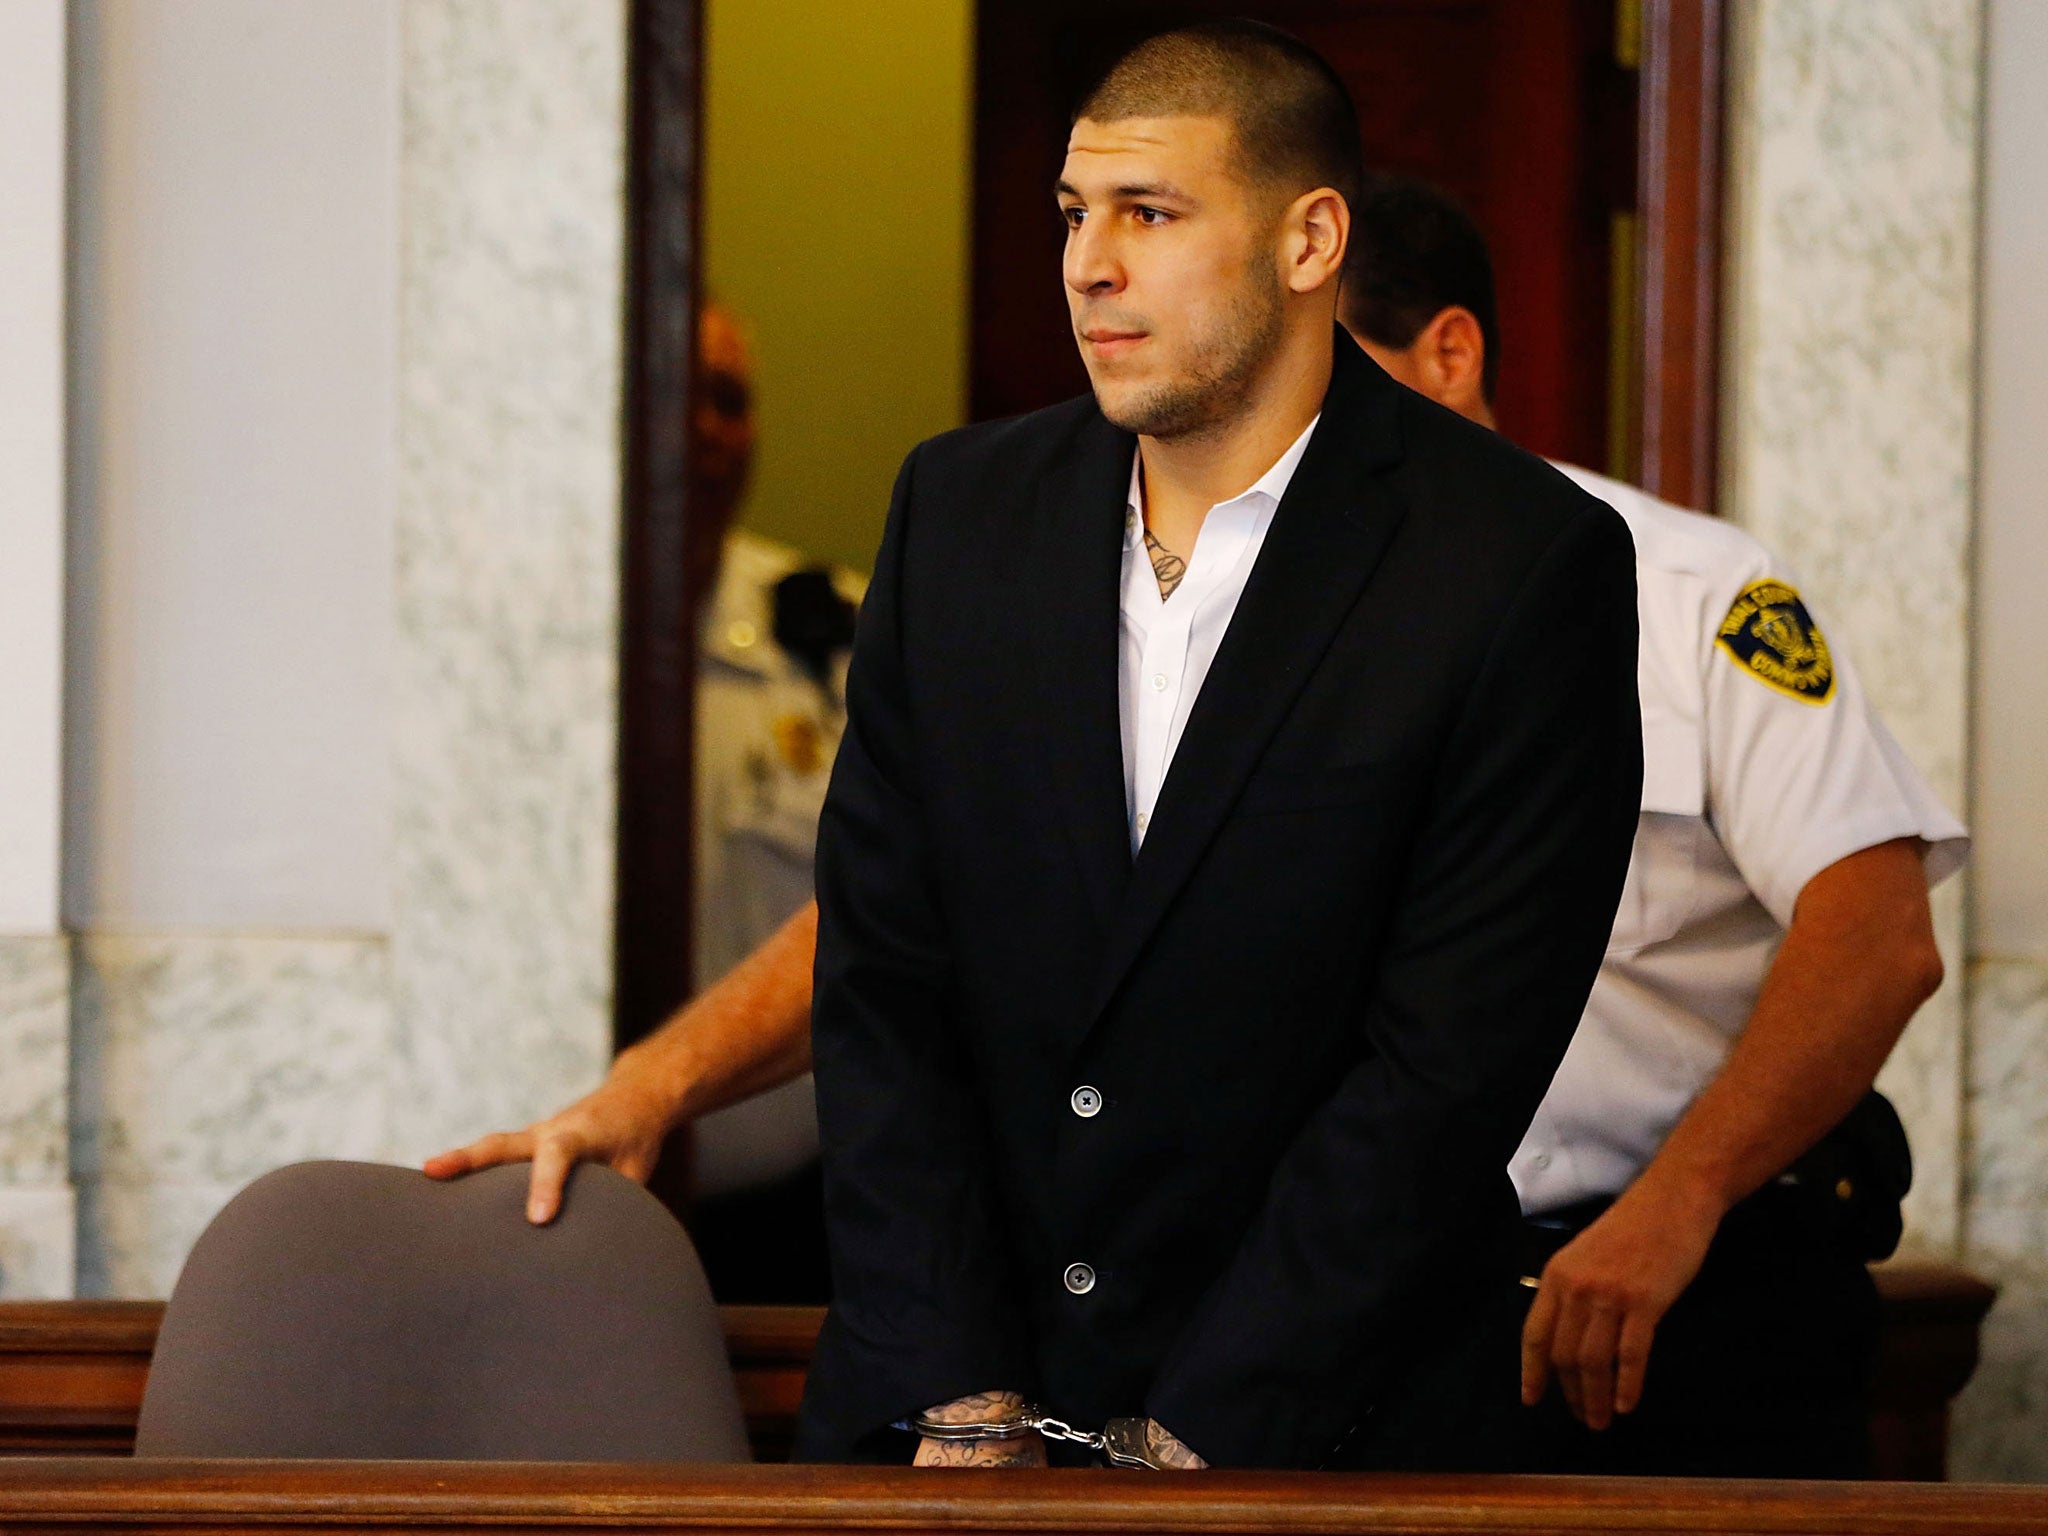 Hernandez killed himself in prison in April